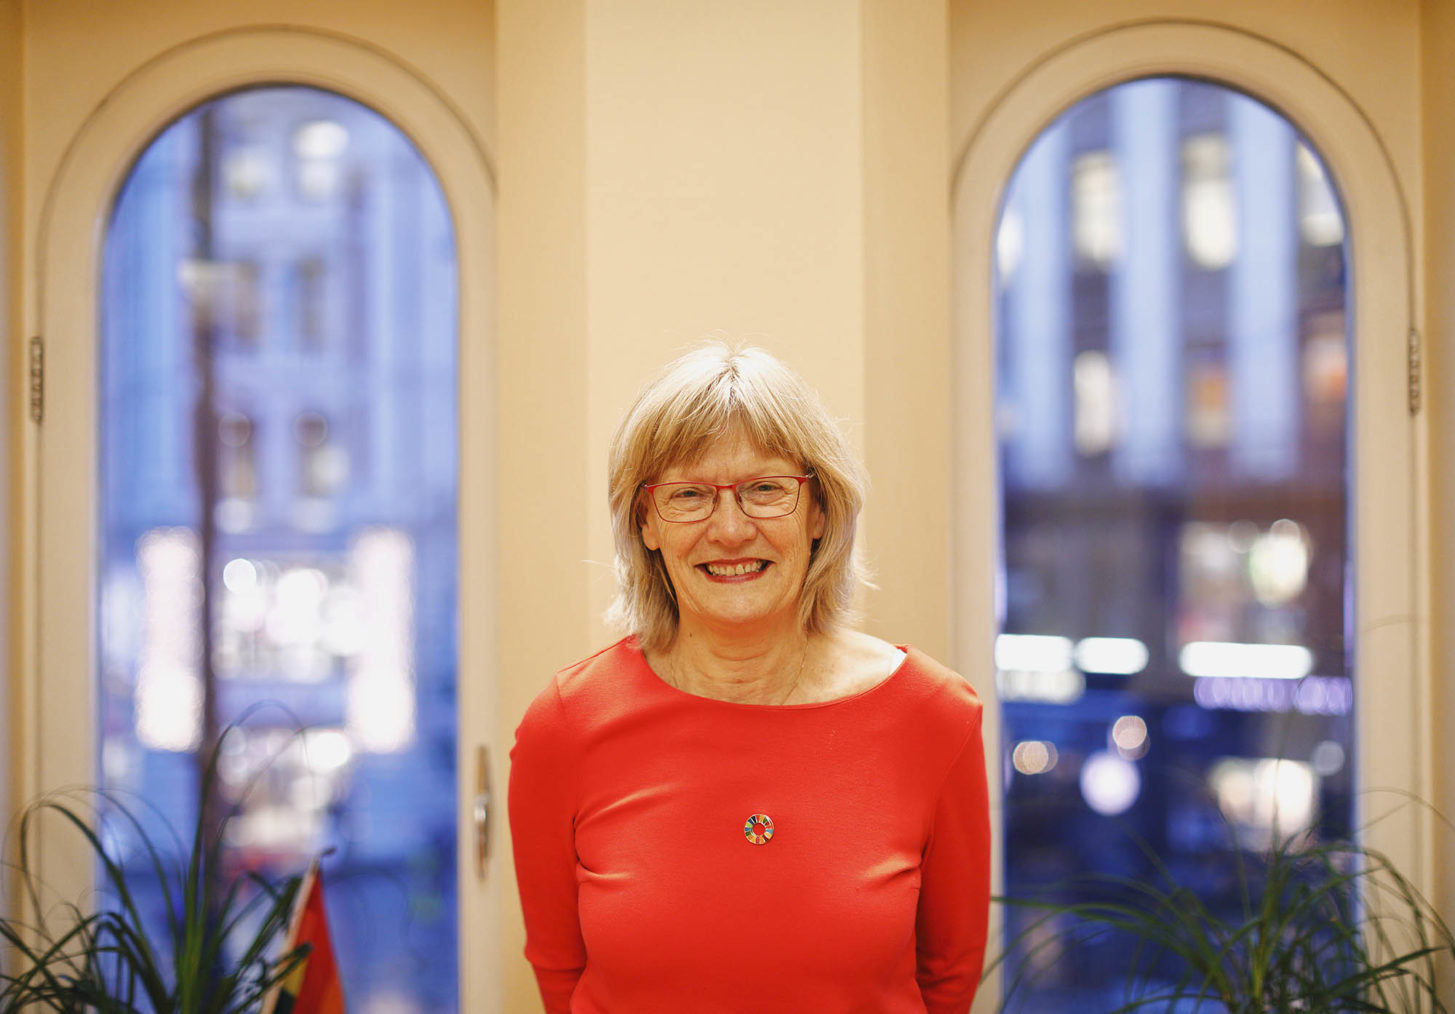 Karin Andersen fotografert på kontoret med Stortingets høye buede vinduer i bakgrunnen.